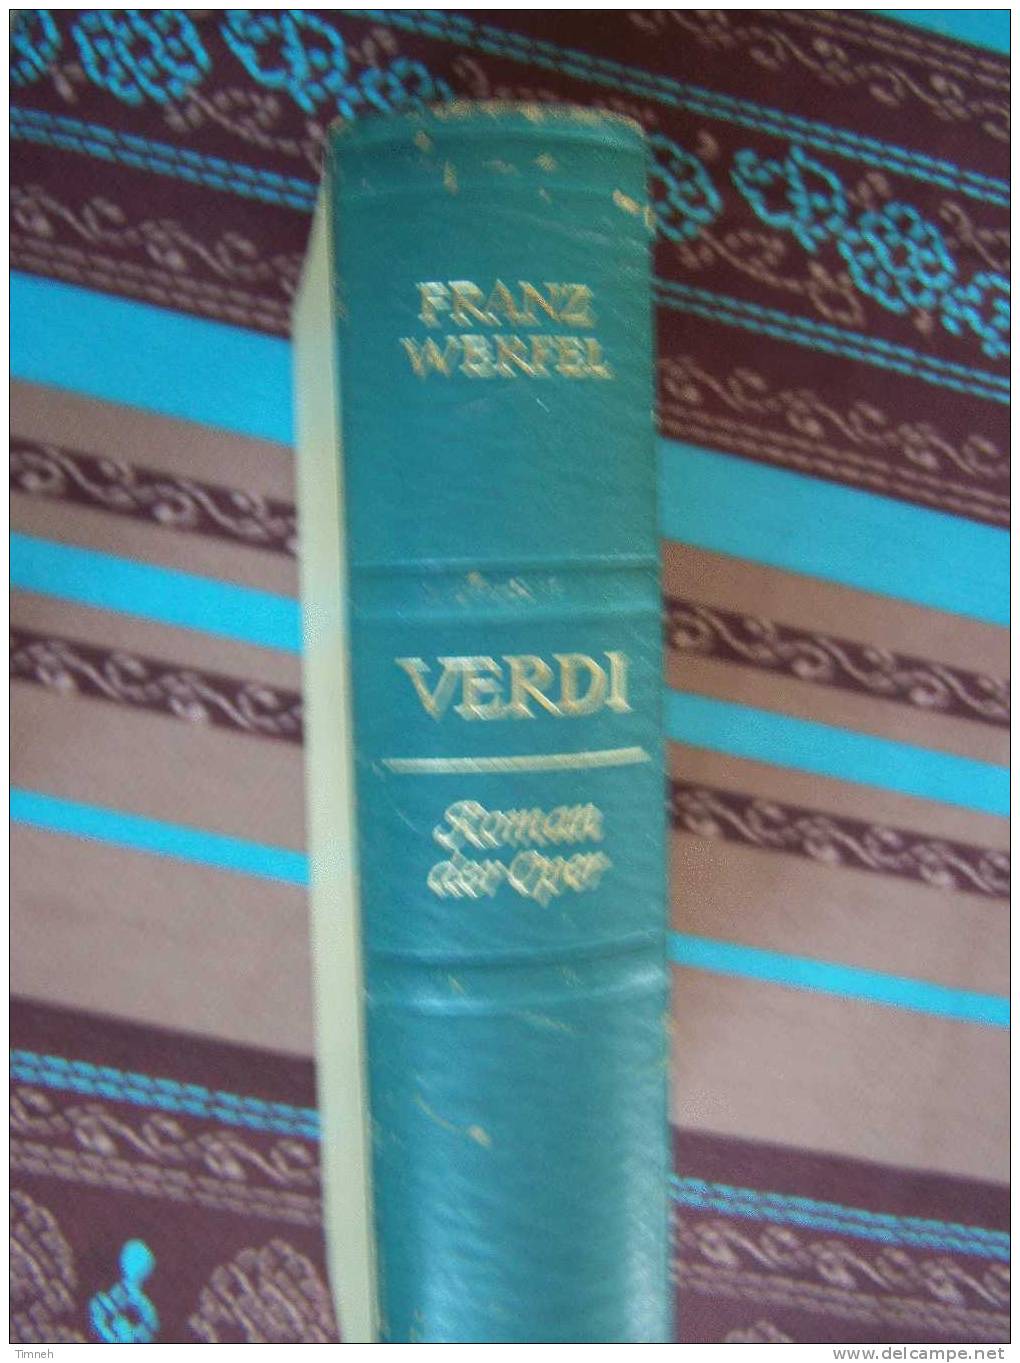 VERDI-Roman Der Oper-Franz Werfel-1955-Deutsche Buch Gemeinschaft- - Biografía & Memorias